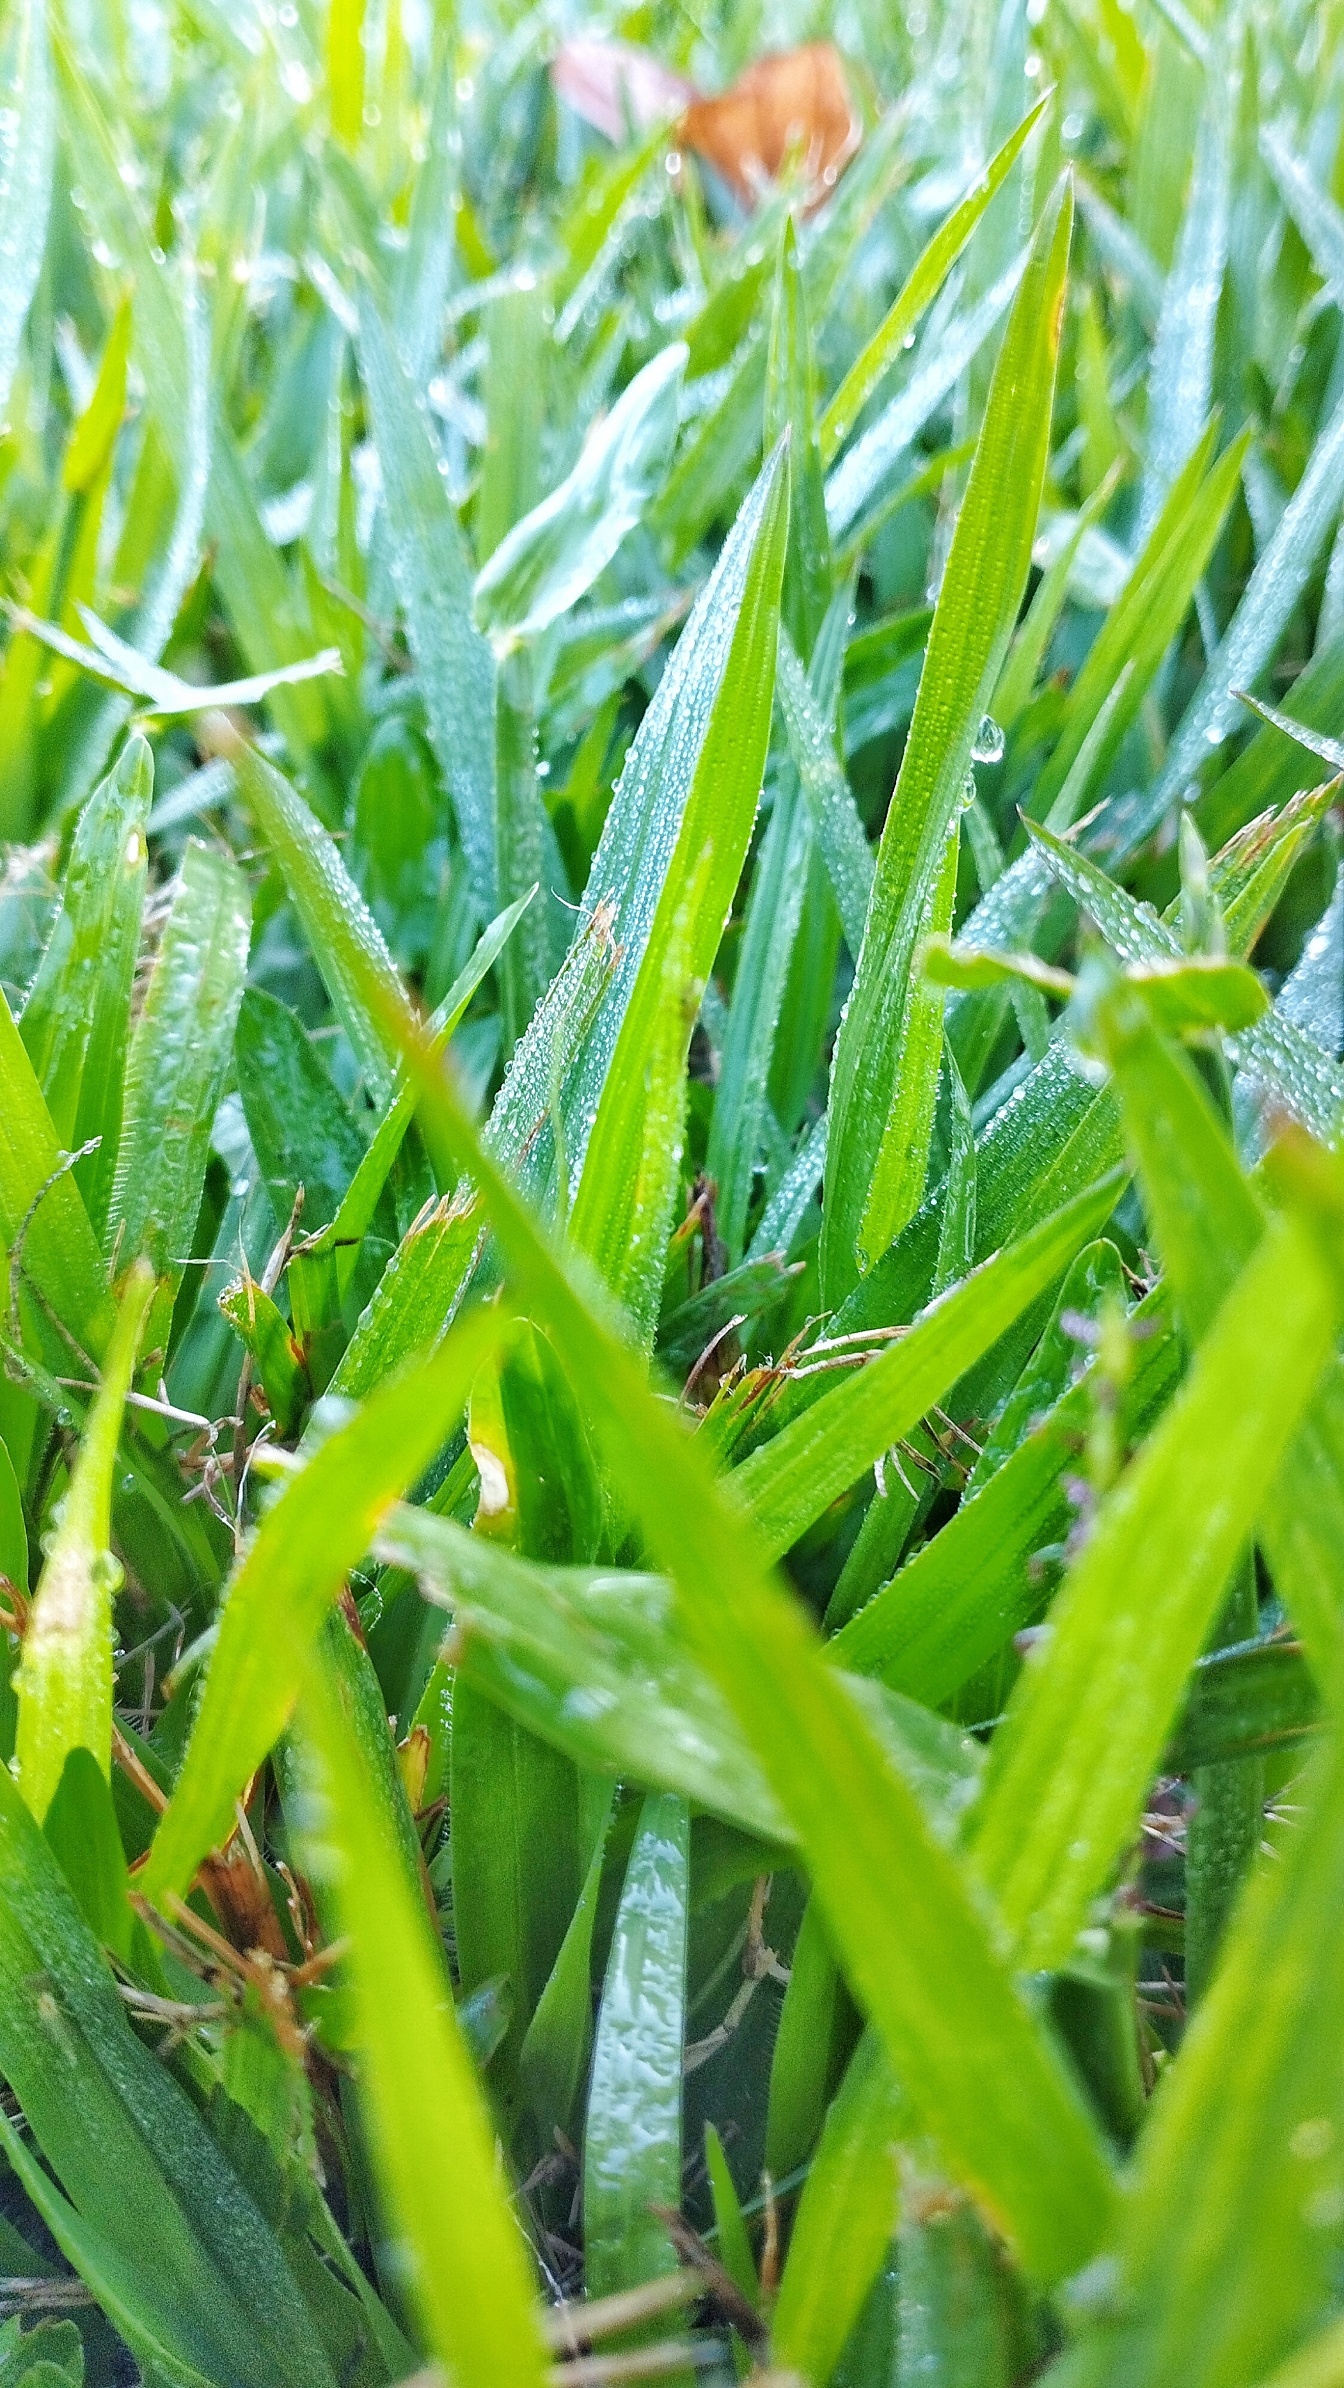 Cận cảnh thảm cỏ xanh với những giọt nước trên đó